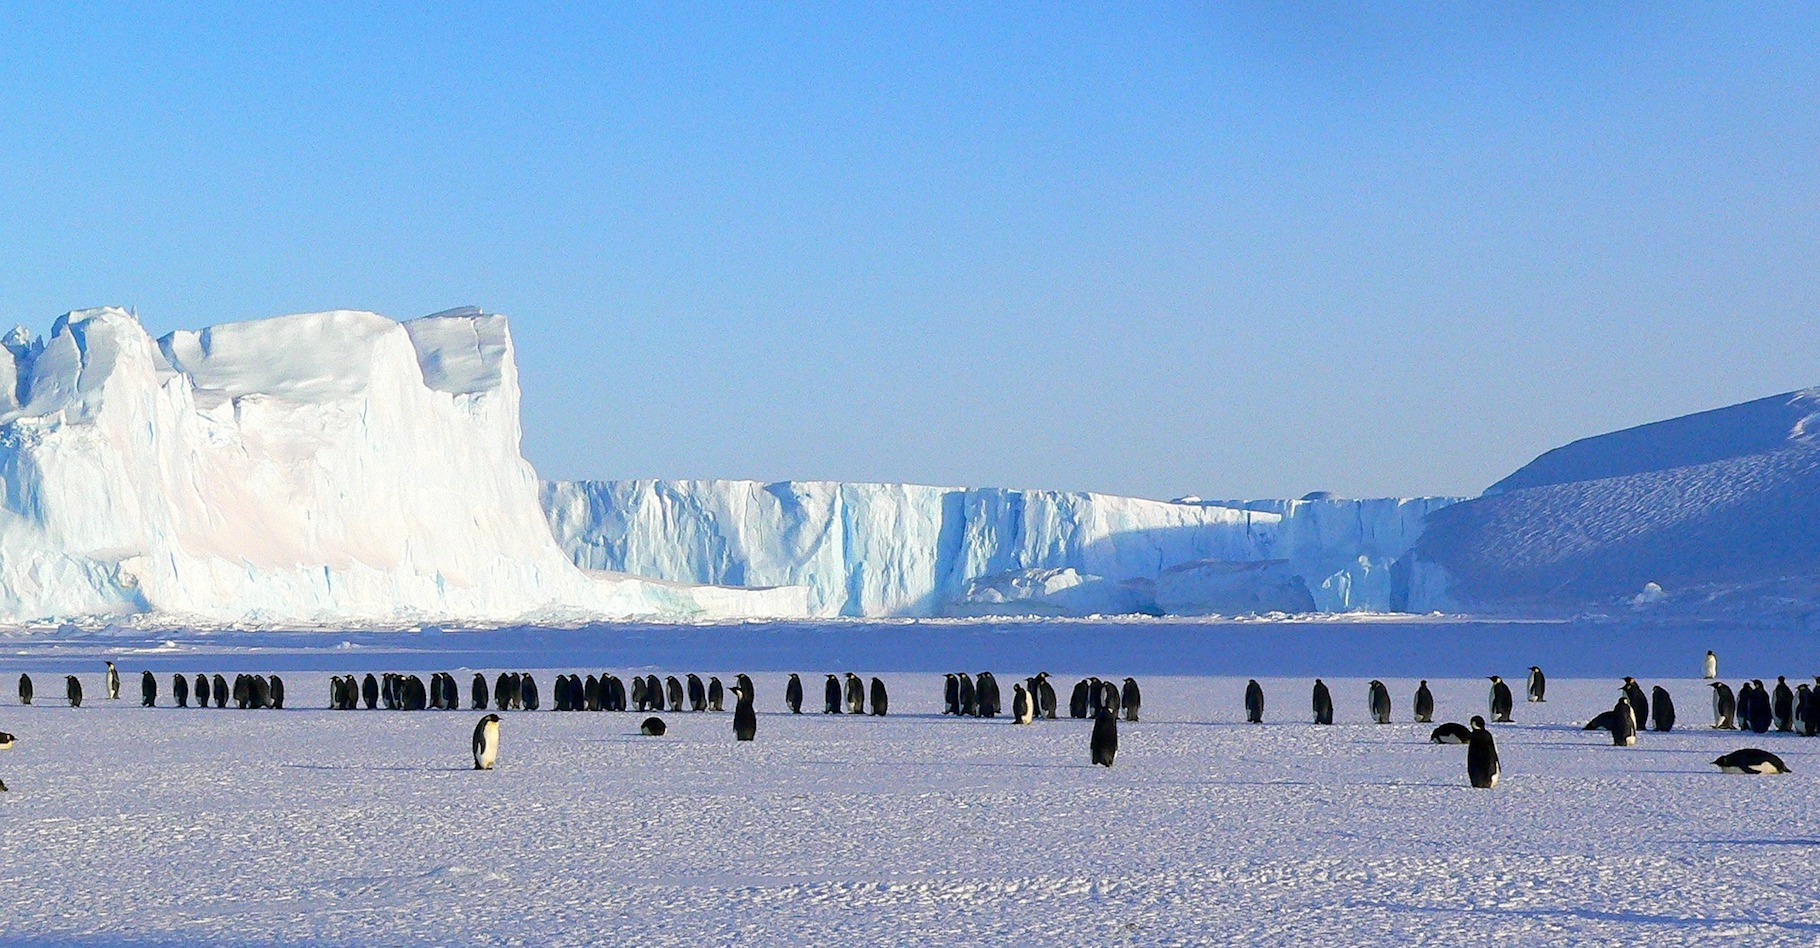 L’Antarctique méritera-t-il encore longtemps son surnom de continent blanc ? © MemoryCatcher, Pixabay, CC0 Public Domain